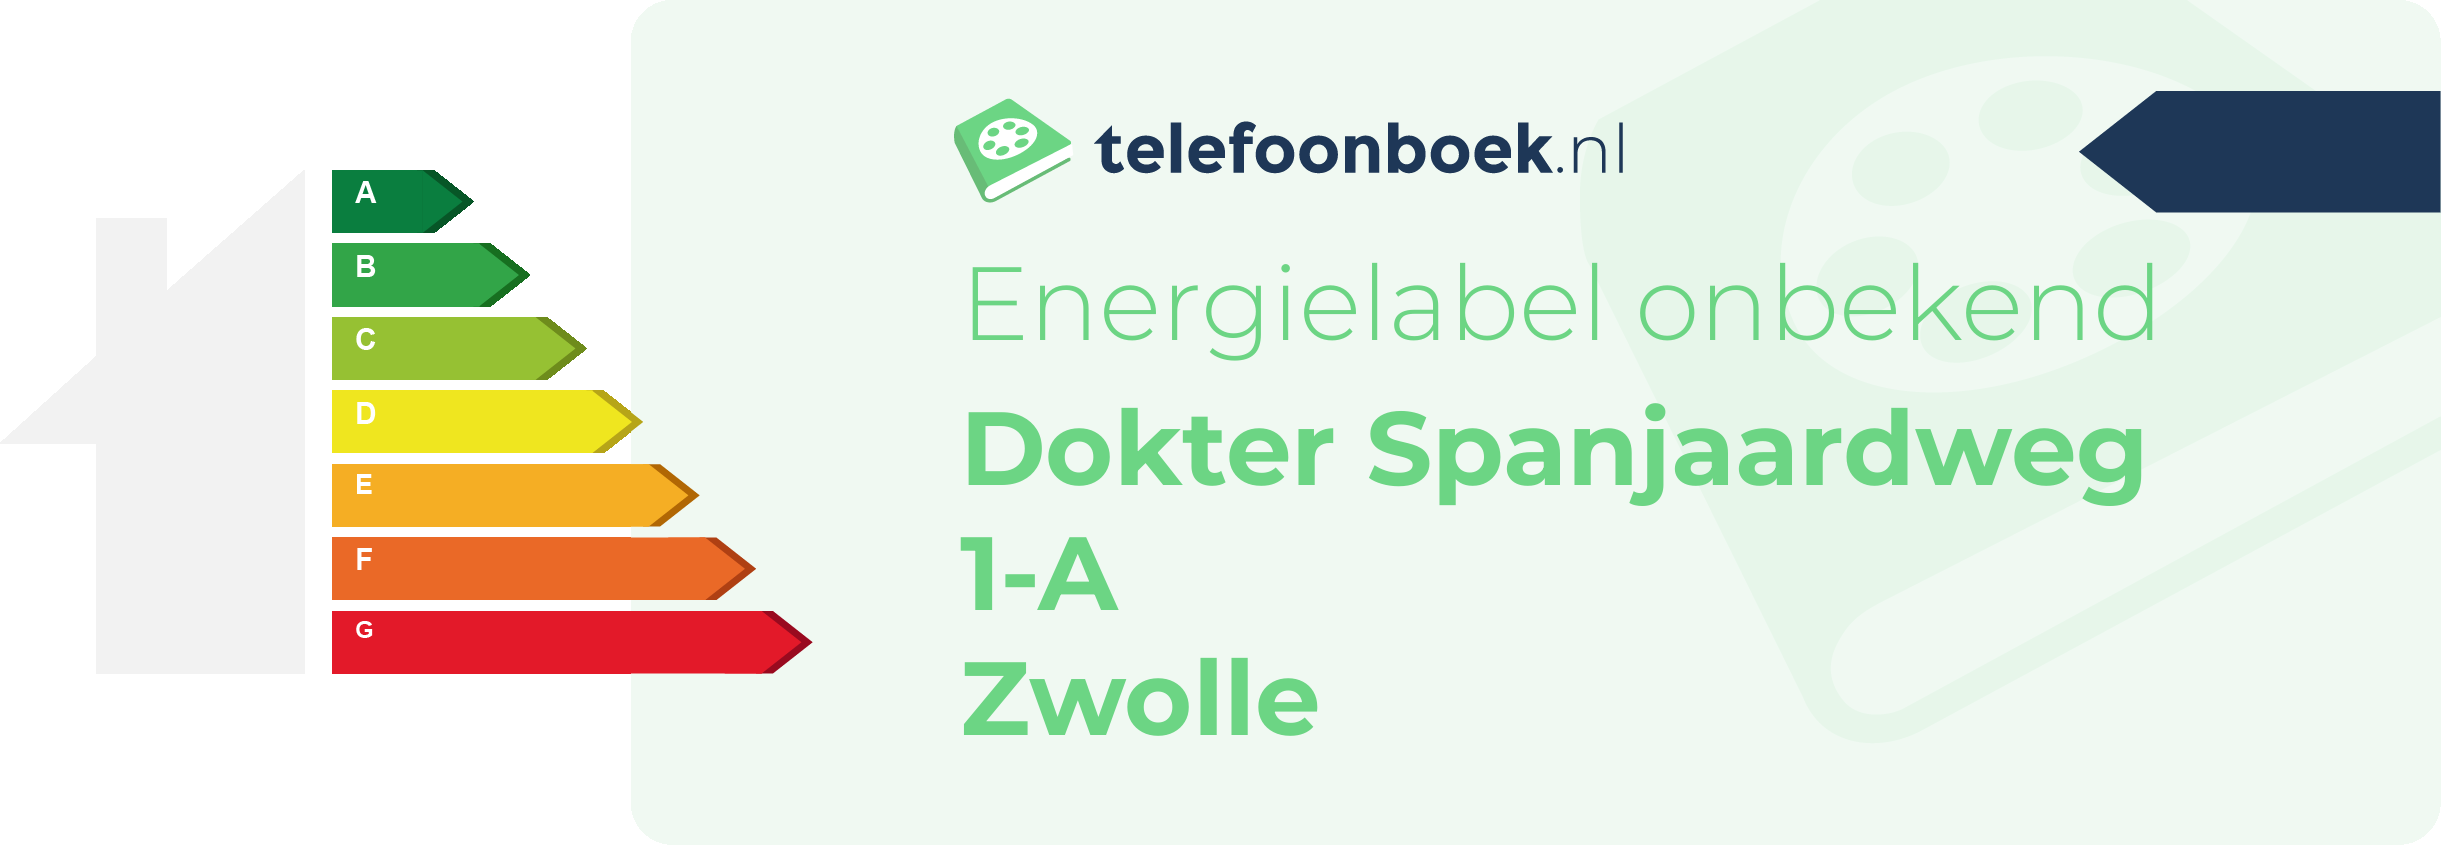 Energielabel Dokter Spanjaardweg 1-A Zwolle